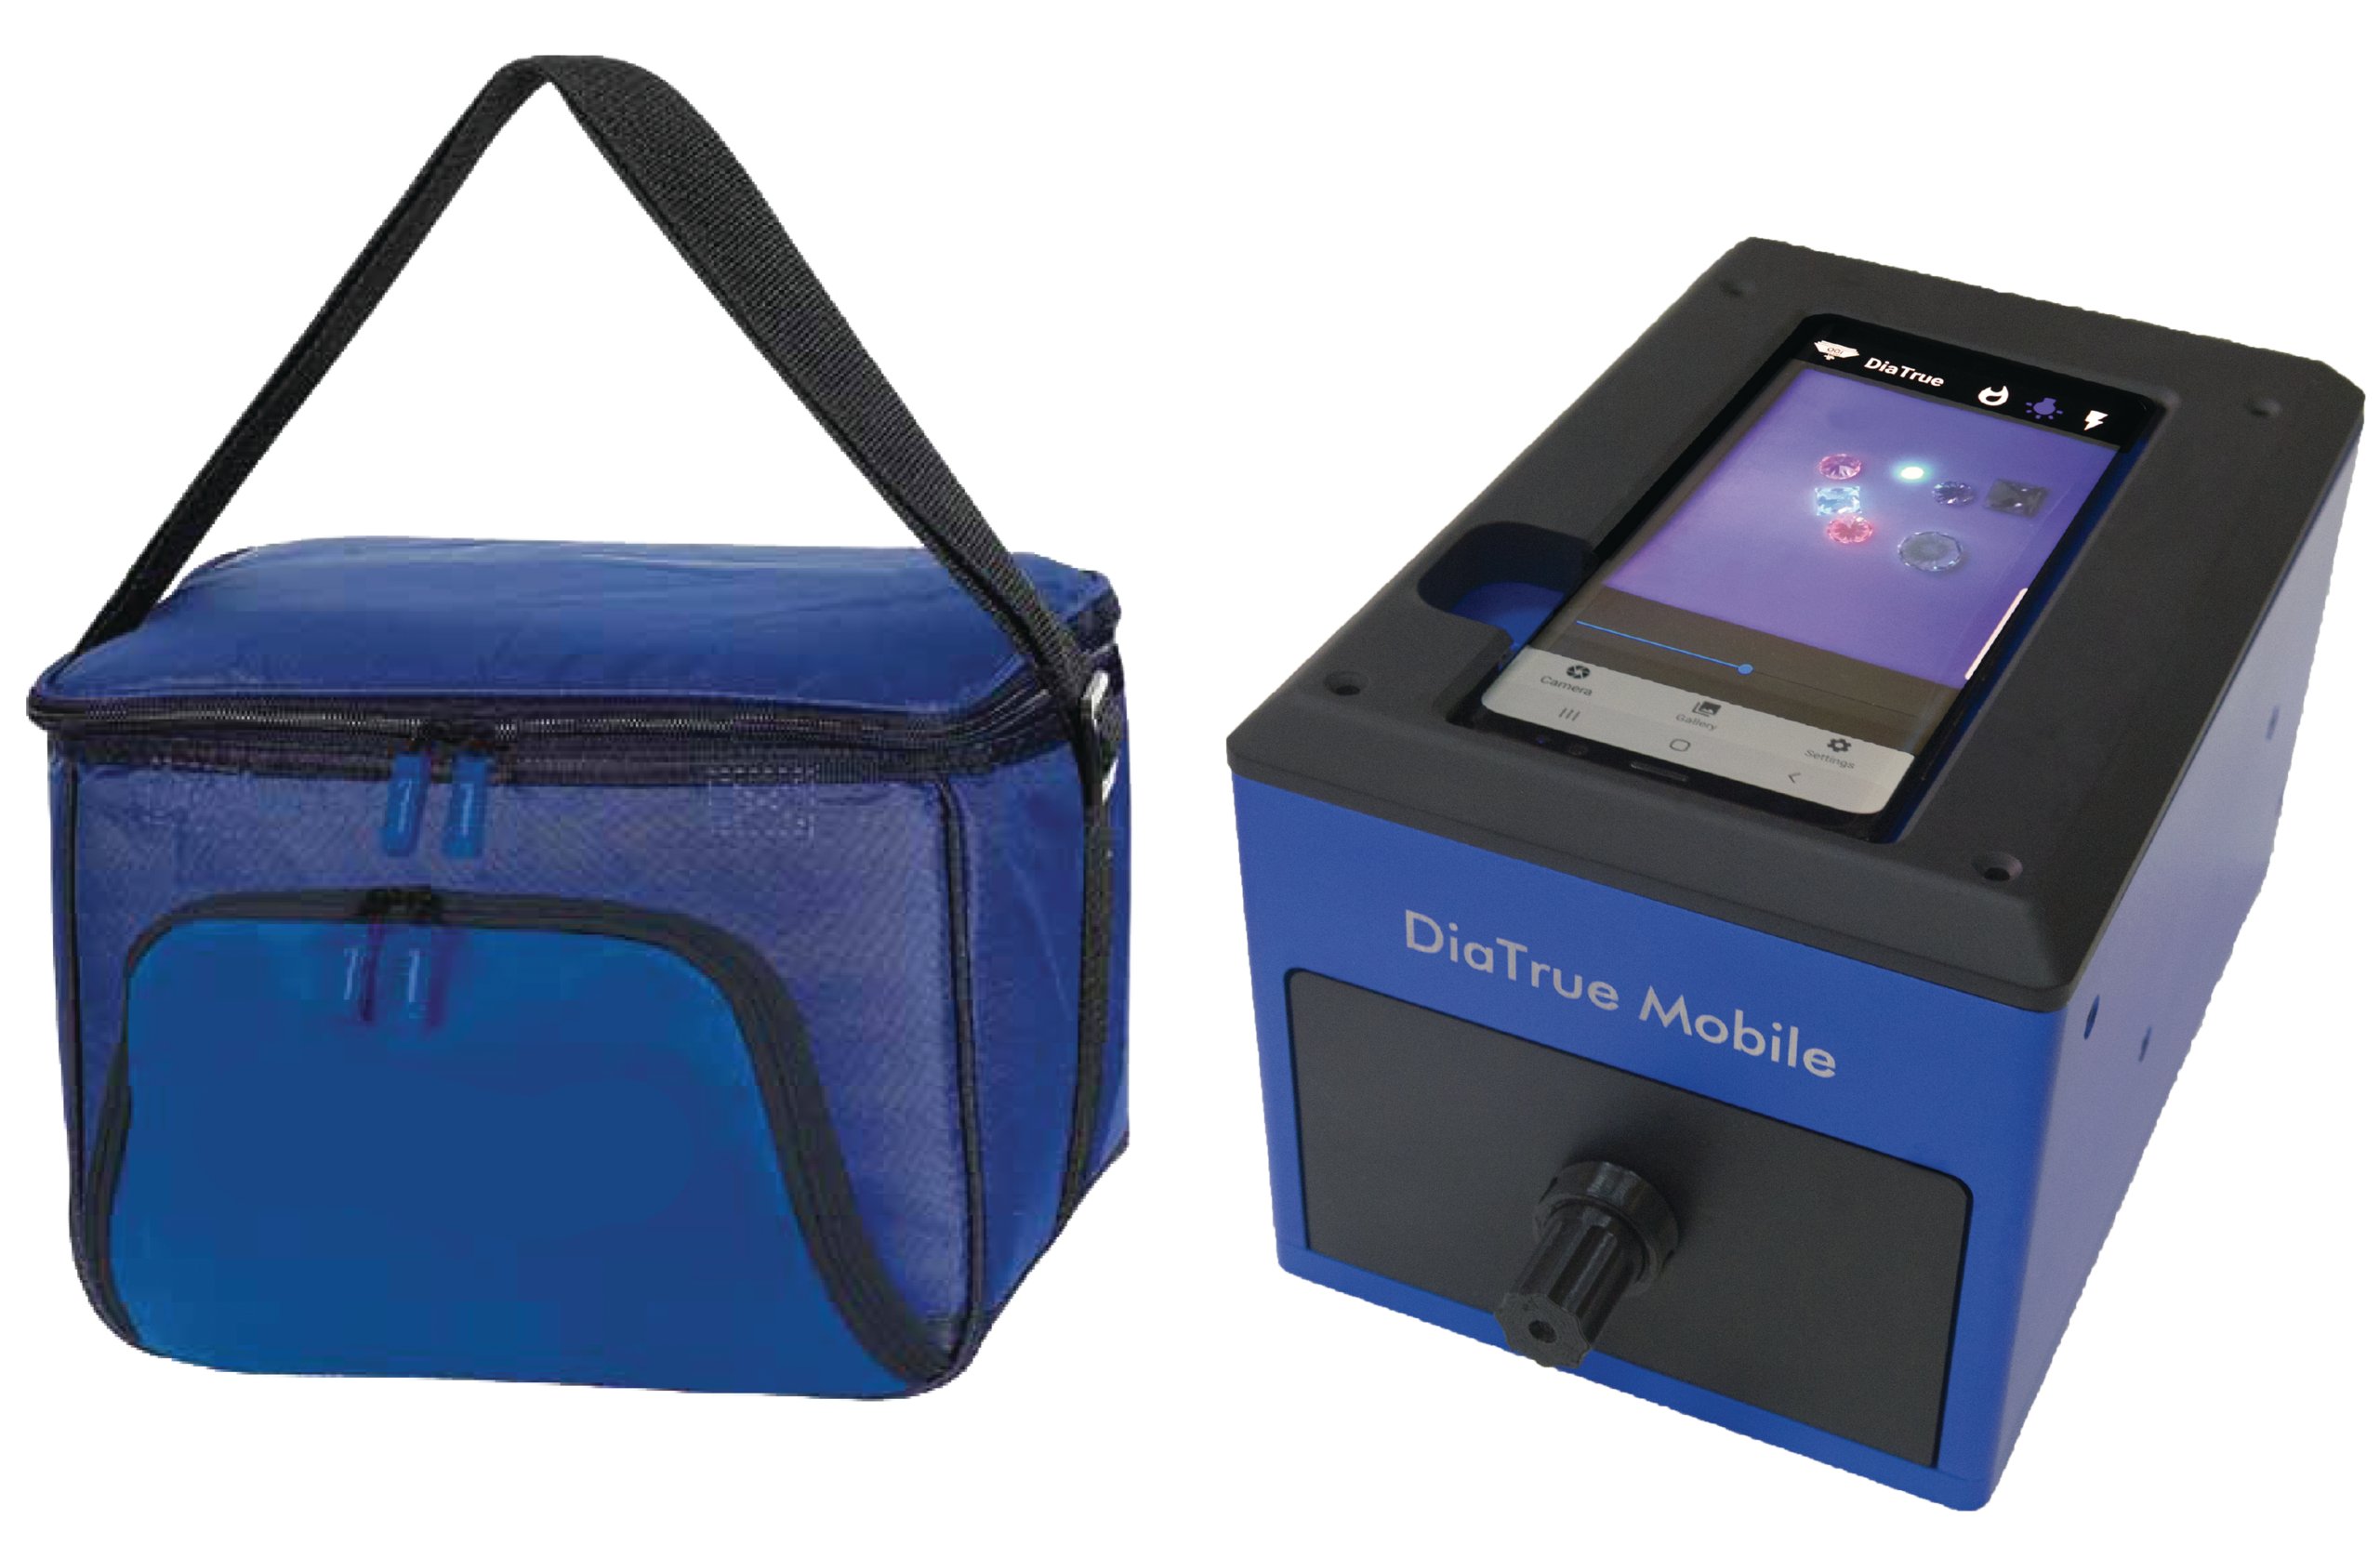 The DiaTrue Mobile V2 by OGI